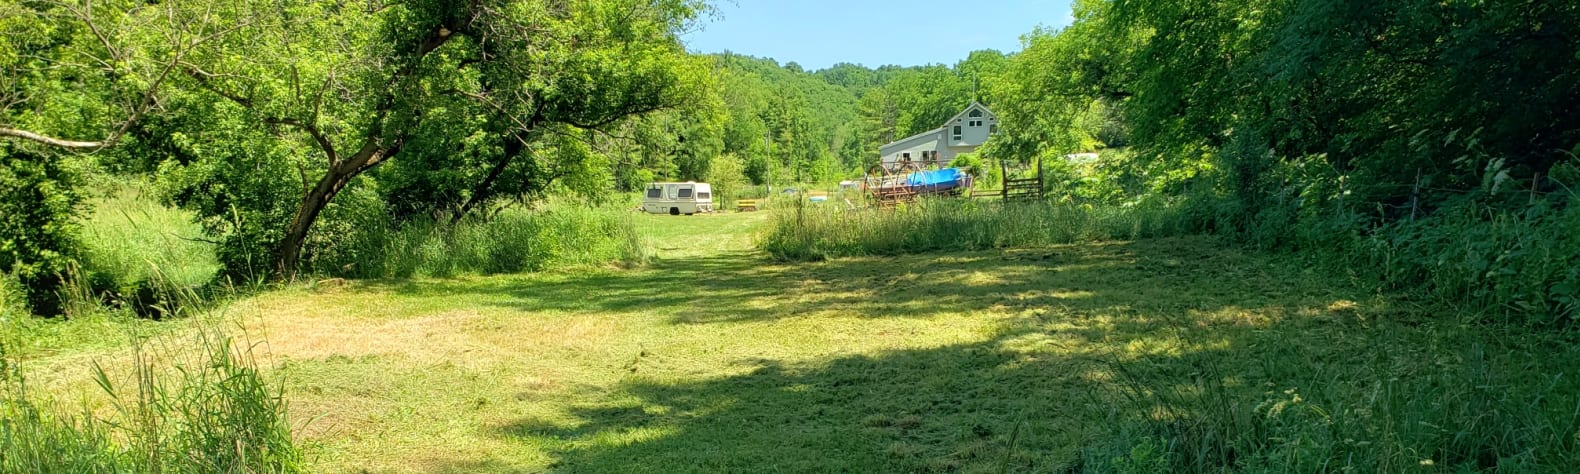 Creekside field campsite